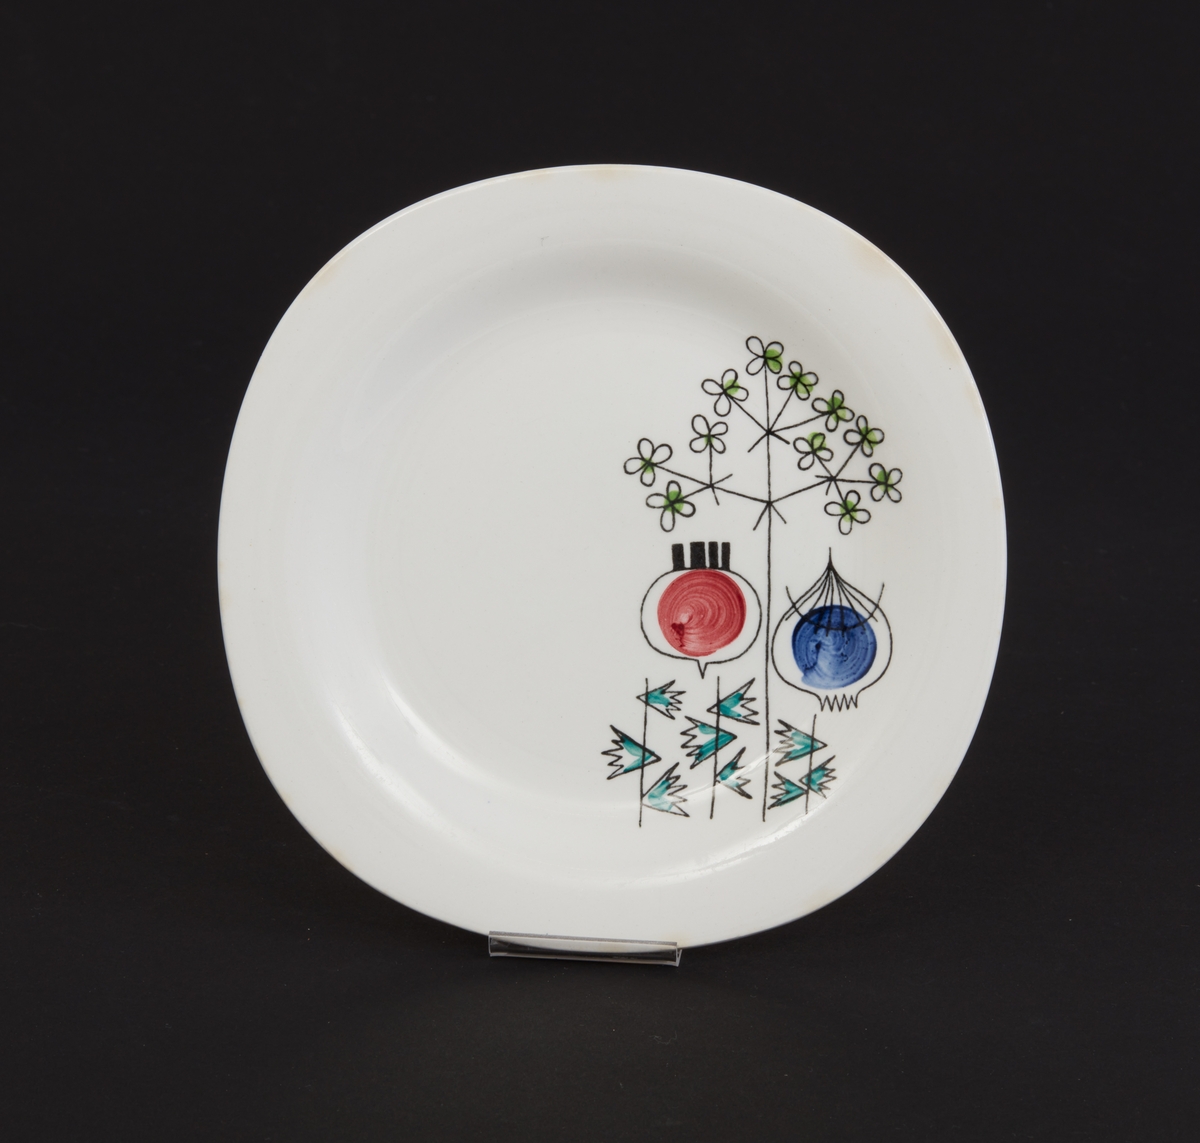 Assiett av vitt porslin. Mönster: "Pomona" stiliserade grönsaker och örtkvistar. Design: Marianne Westman. Stämplad: "Pomona, Rörstrand, Sweden". Tillverkades 1956 - 1971.